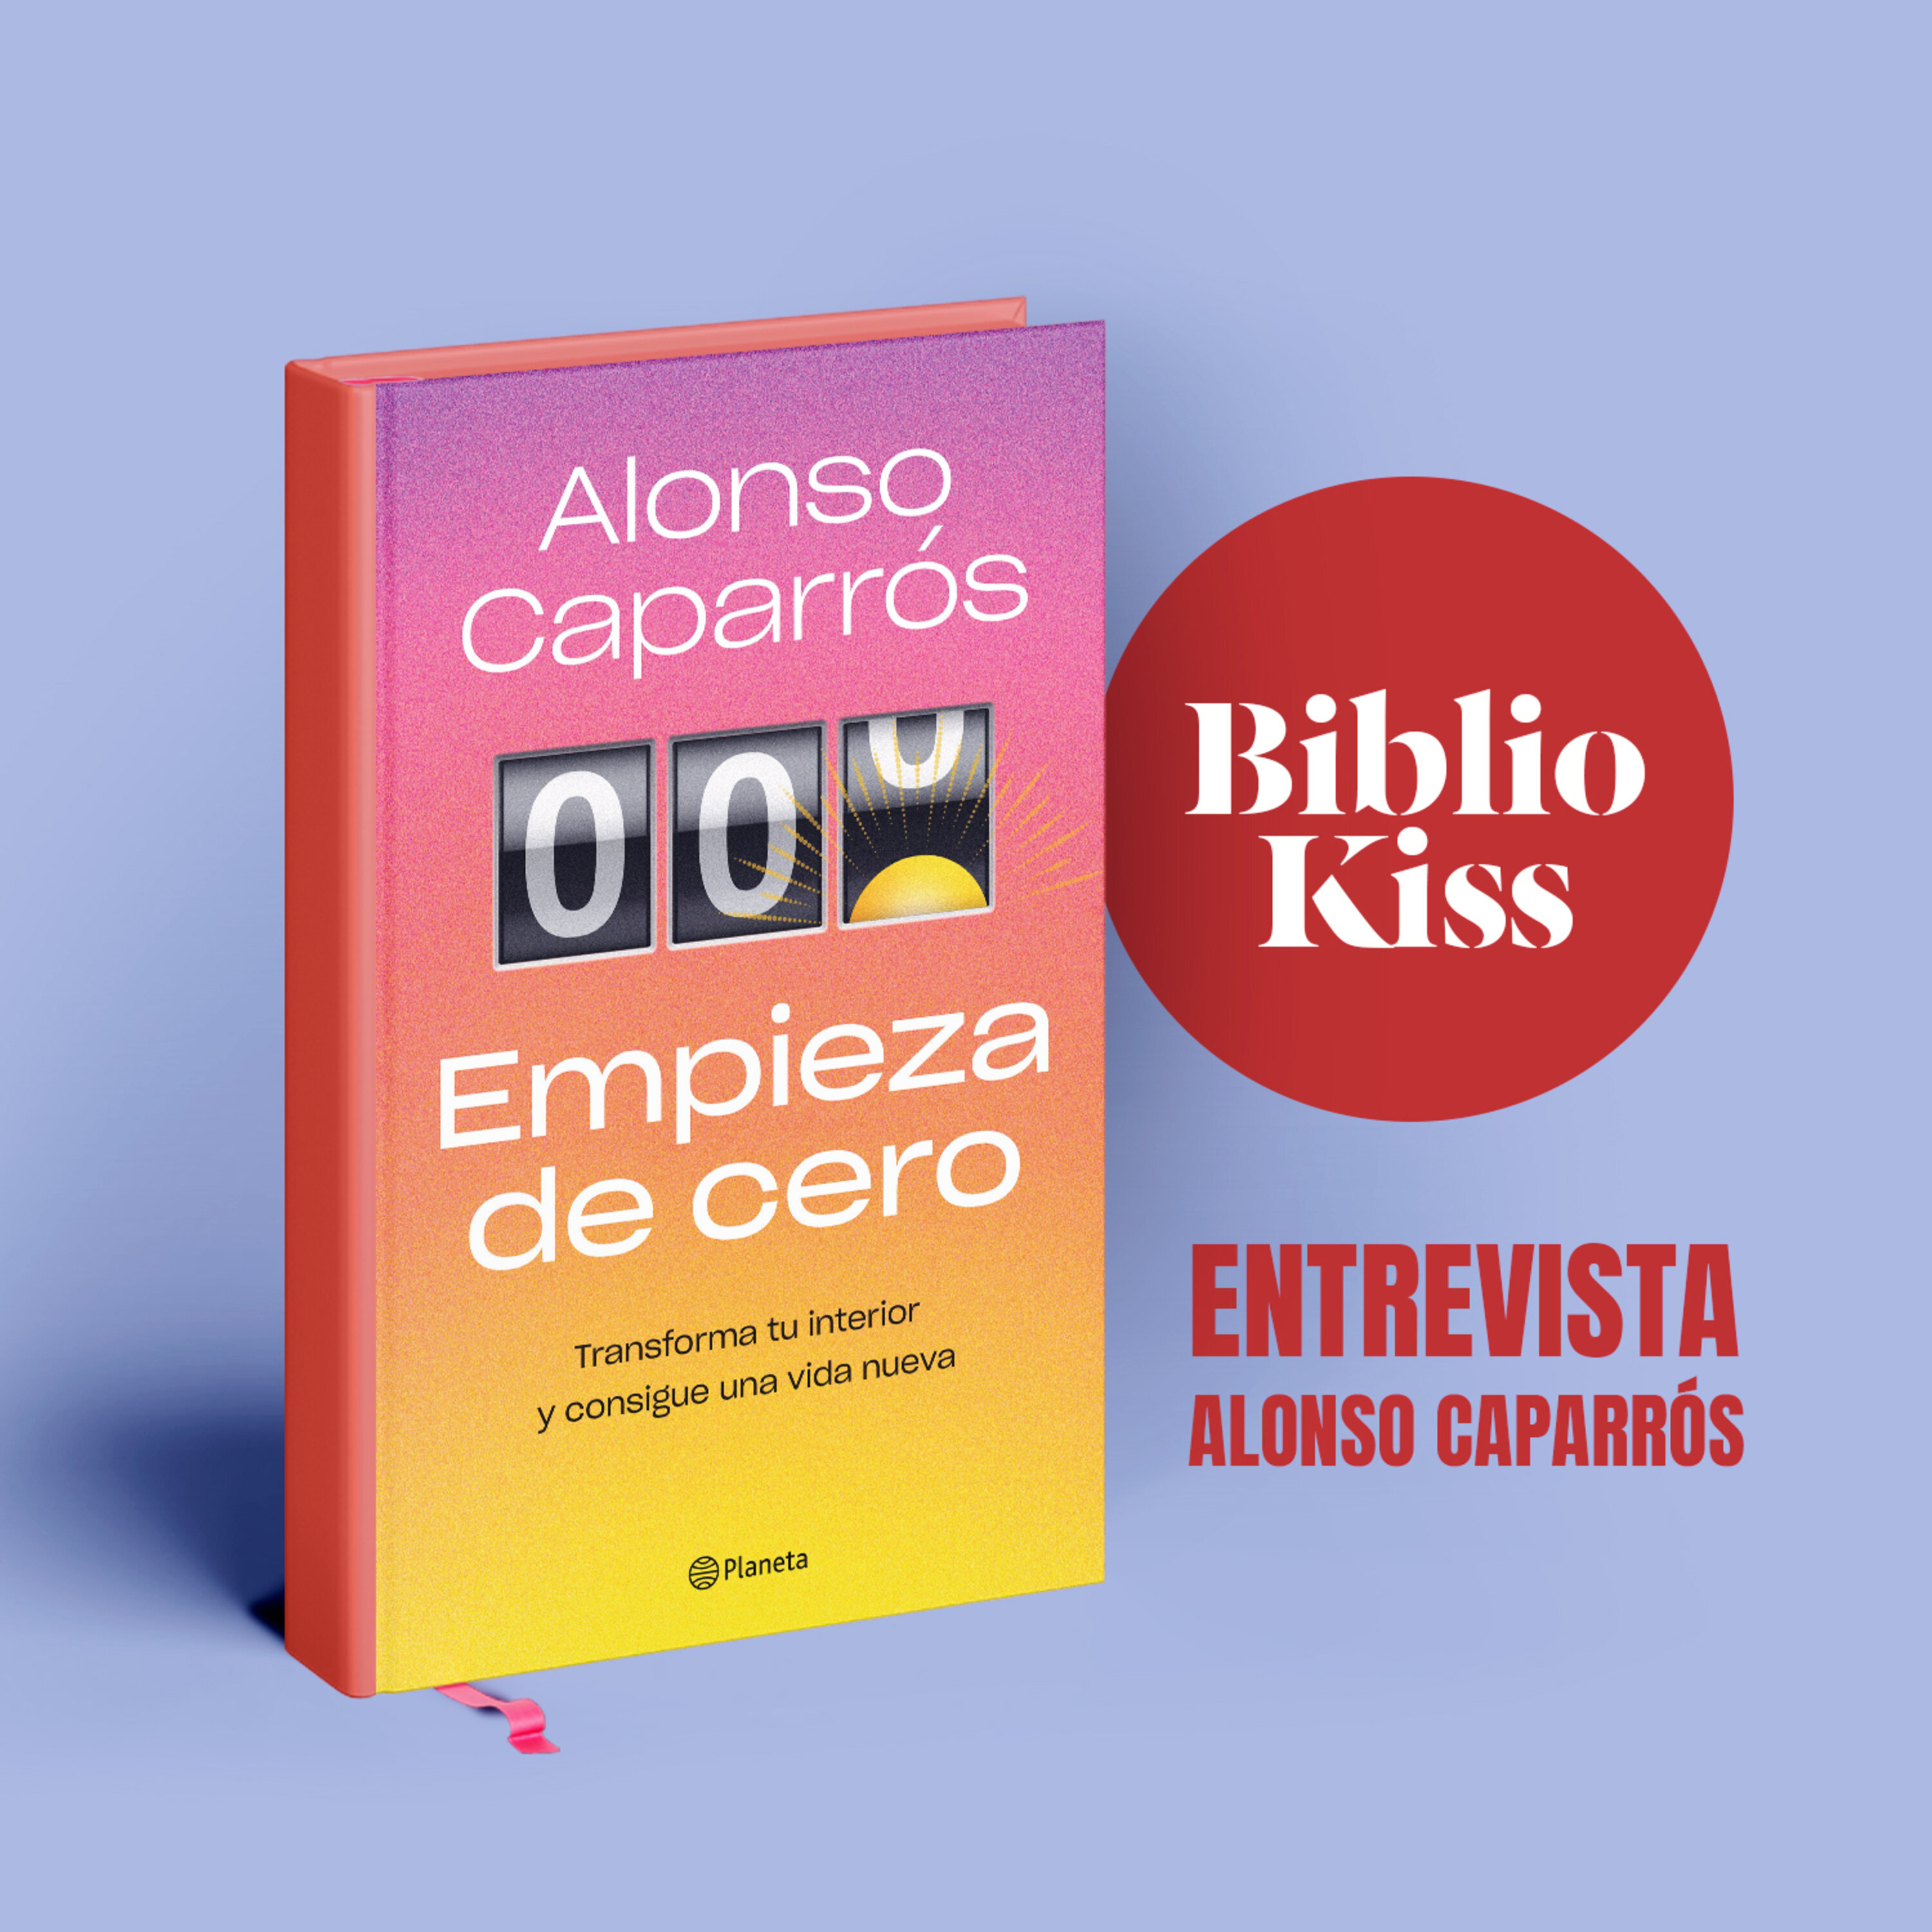 Alonso Caparrós nos presenta "Empieza de cero"